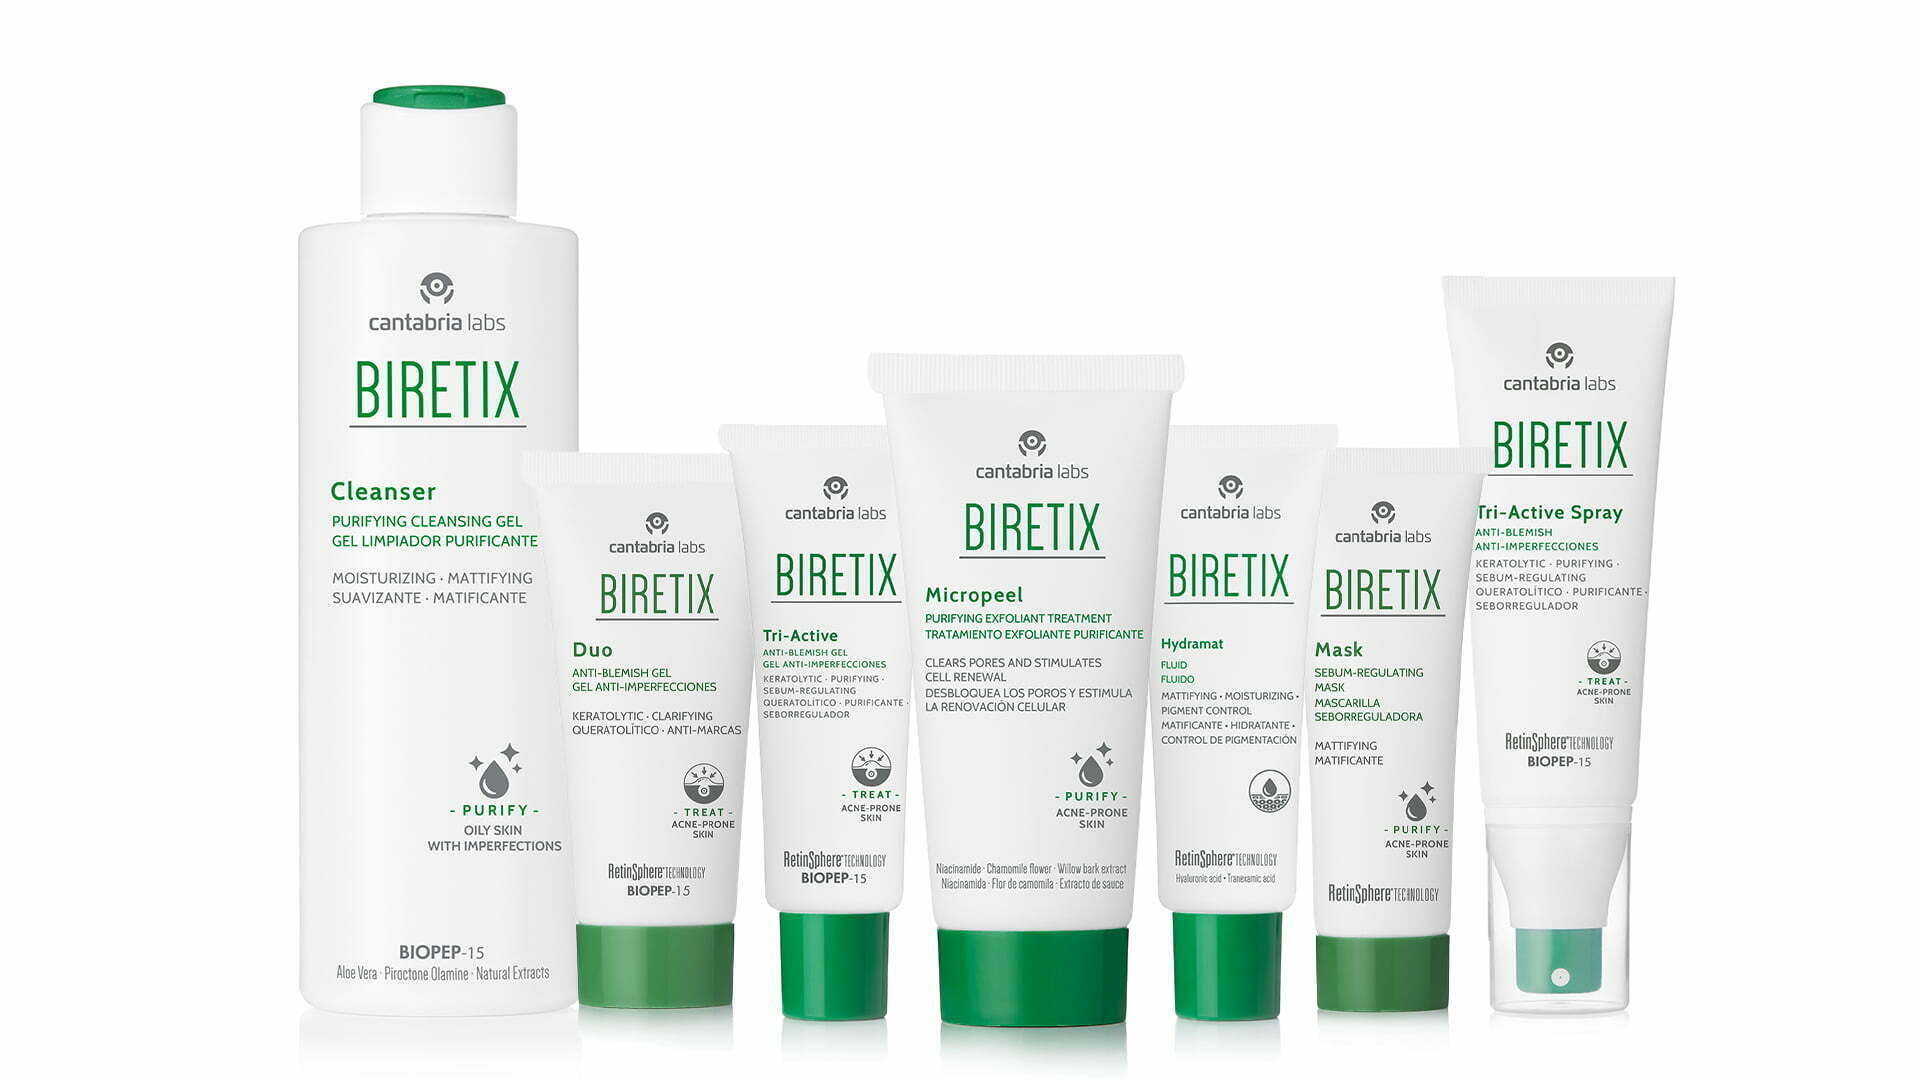 Picture of the Biretix product range